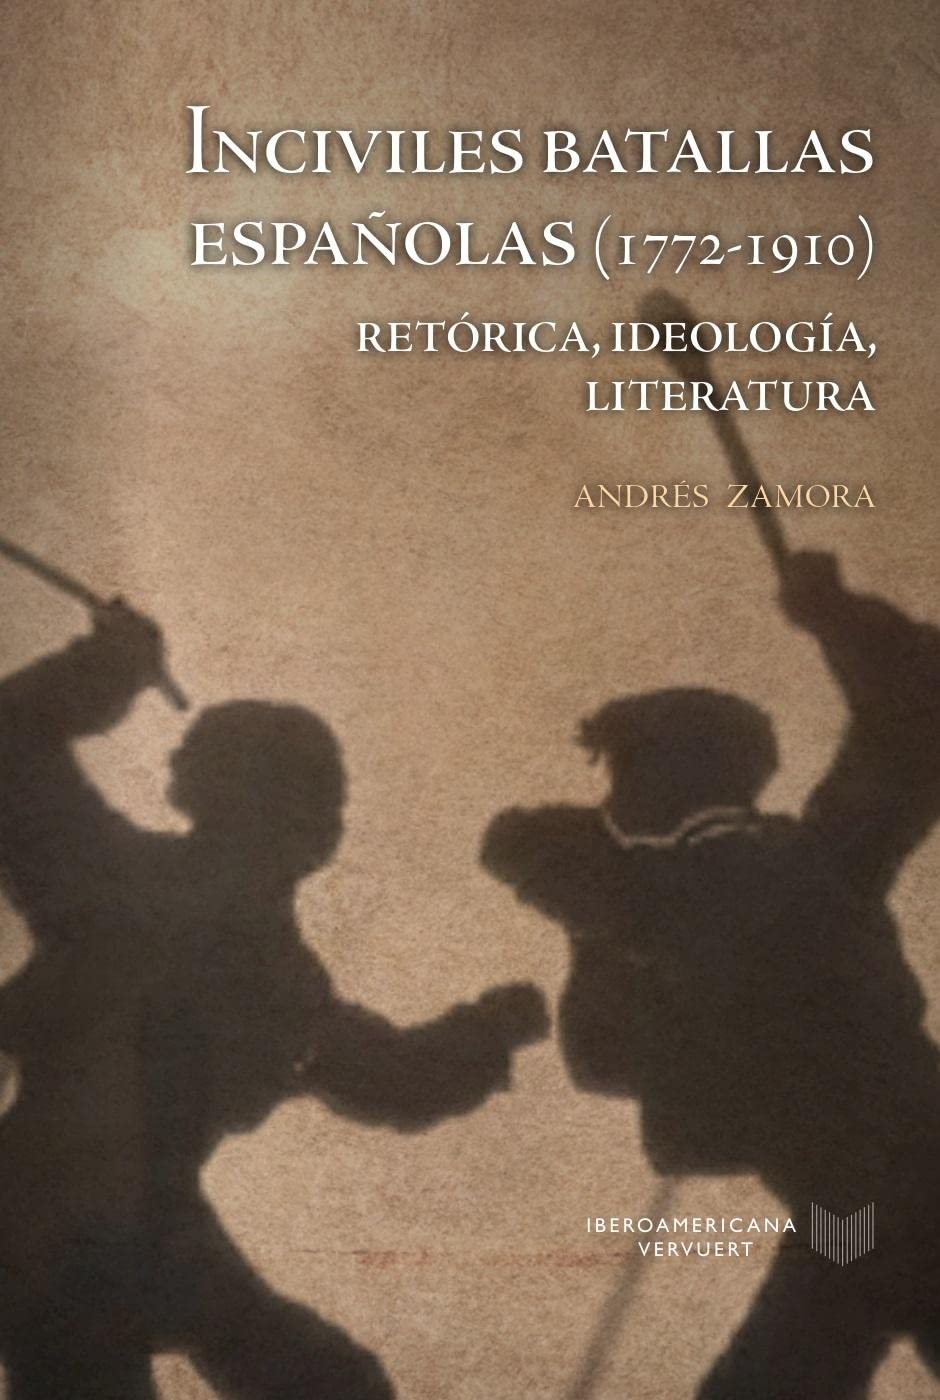 Imagen de portada del libro Inciviles batallas españolas (1772-1910)